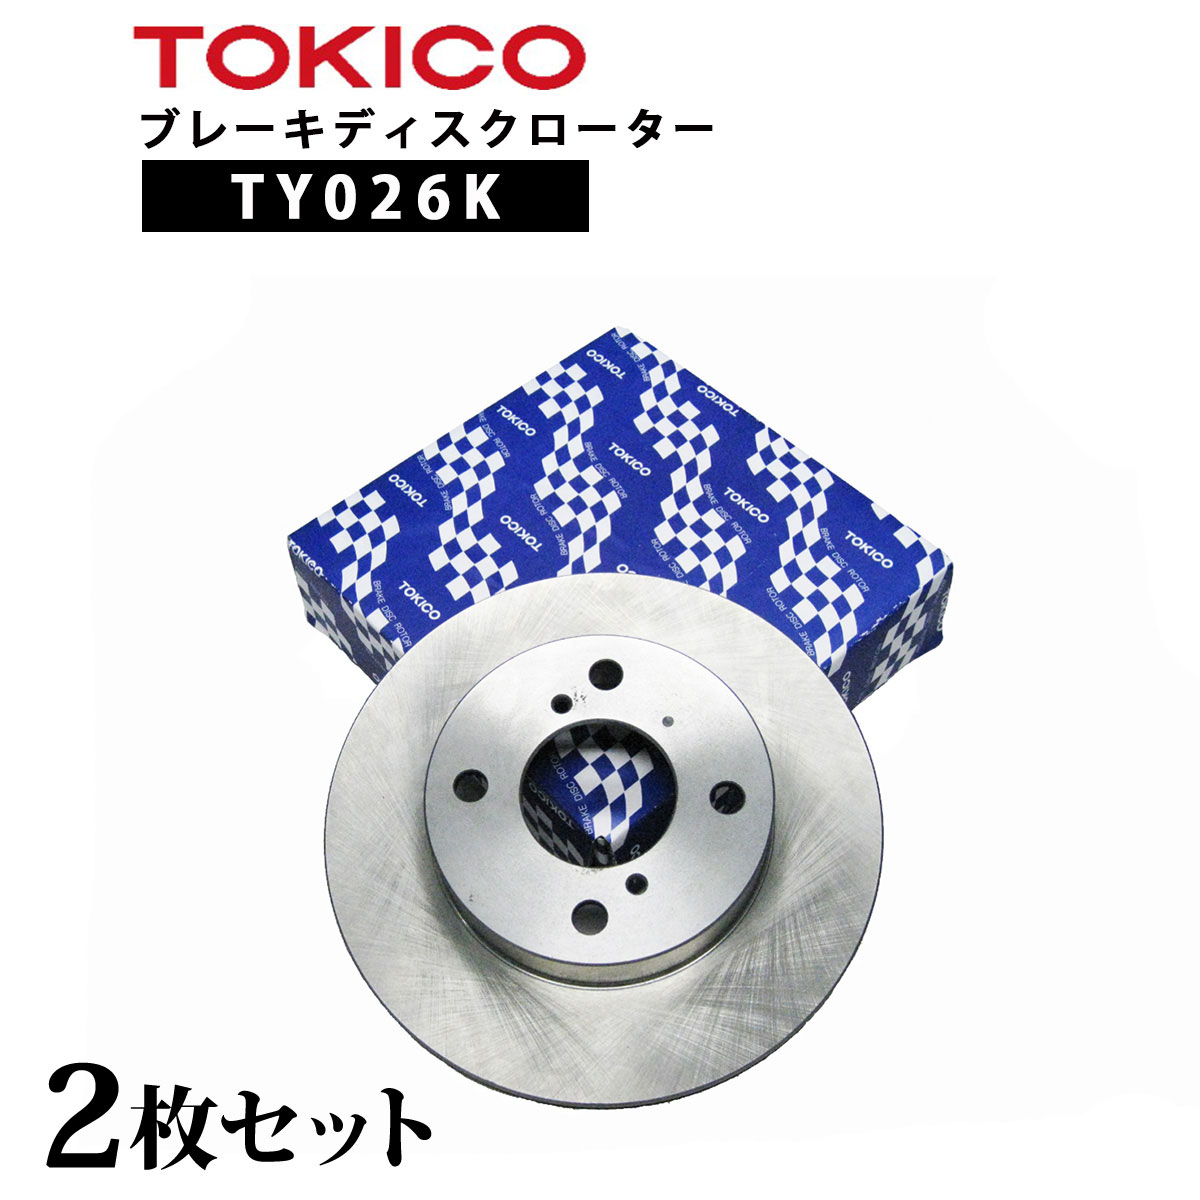 TY026K TOKICO ブレーキディスクローター フロント 2枚 左右セット トキコ 日立| 適合 純正 ホンダ 45251-SA7-000 トゥデイ F PP1 他社 BD6779 RH109 H6-001B C6F378J